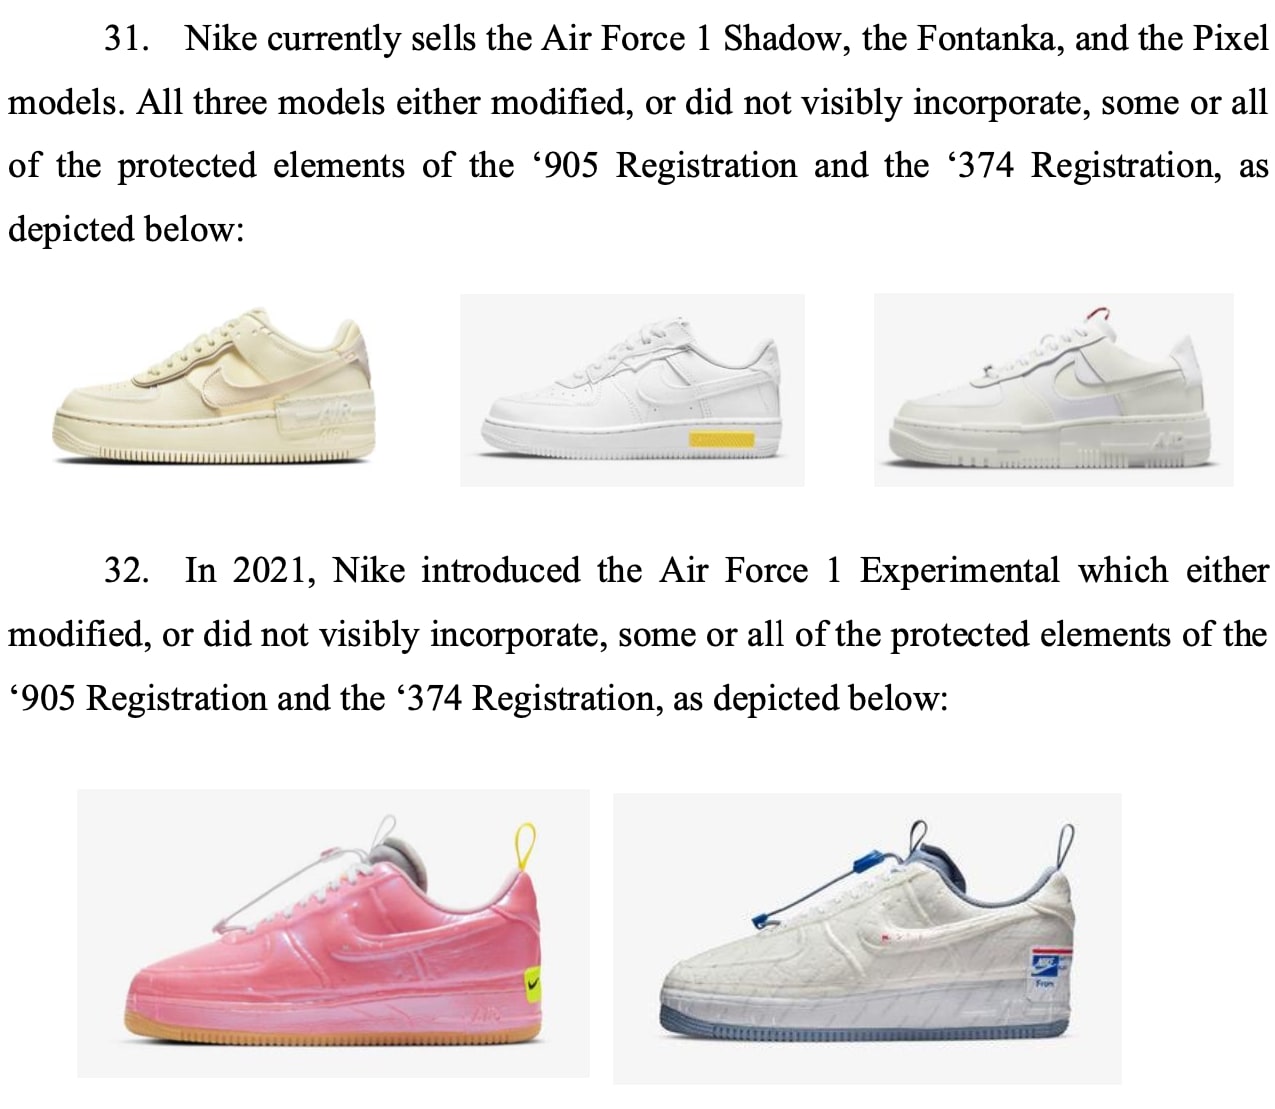 John Geiger Countersues Nike in Air Force 1 Lookalike Lawsuit